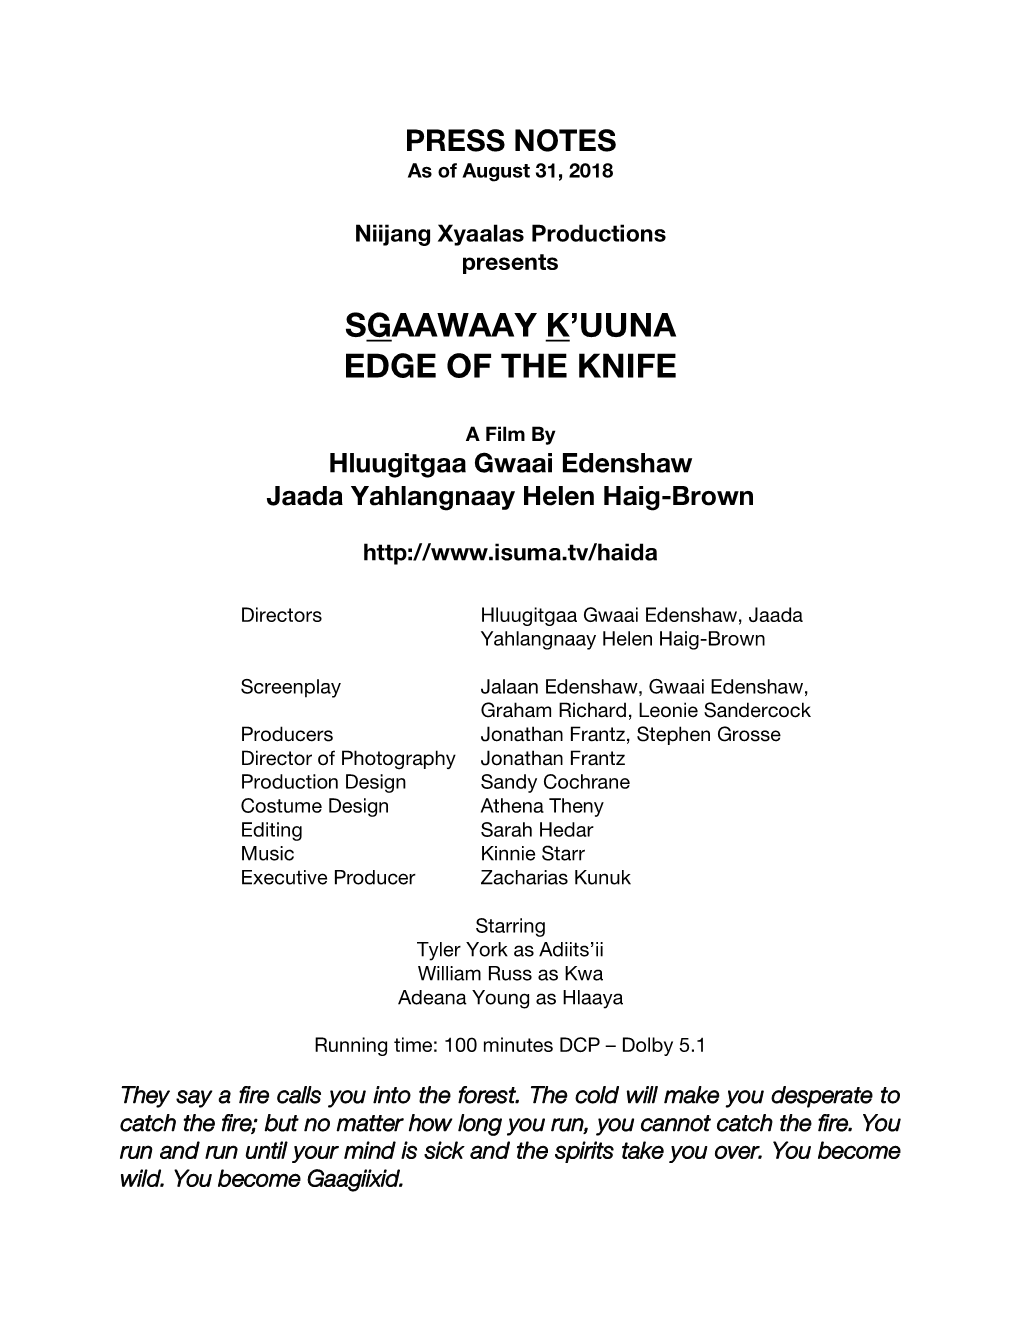 Edge of the Knife-Sgaawaay K'uuna-Press Notes-31Aug18